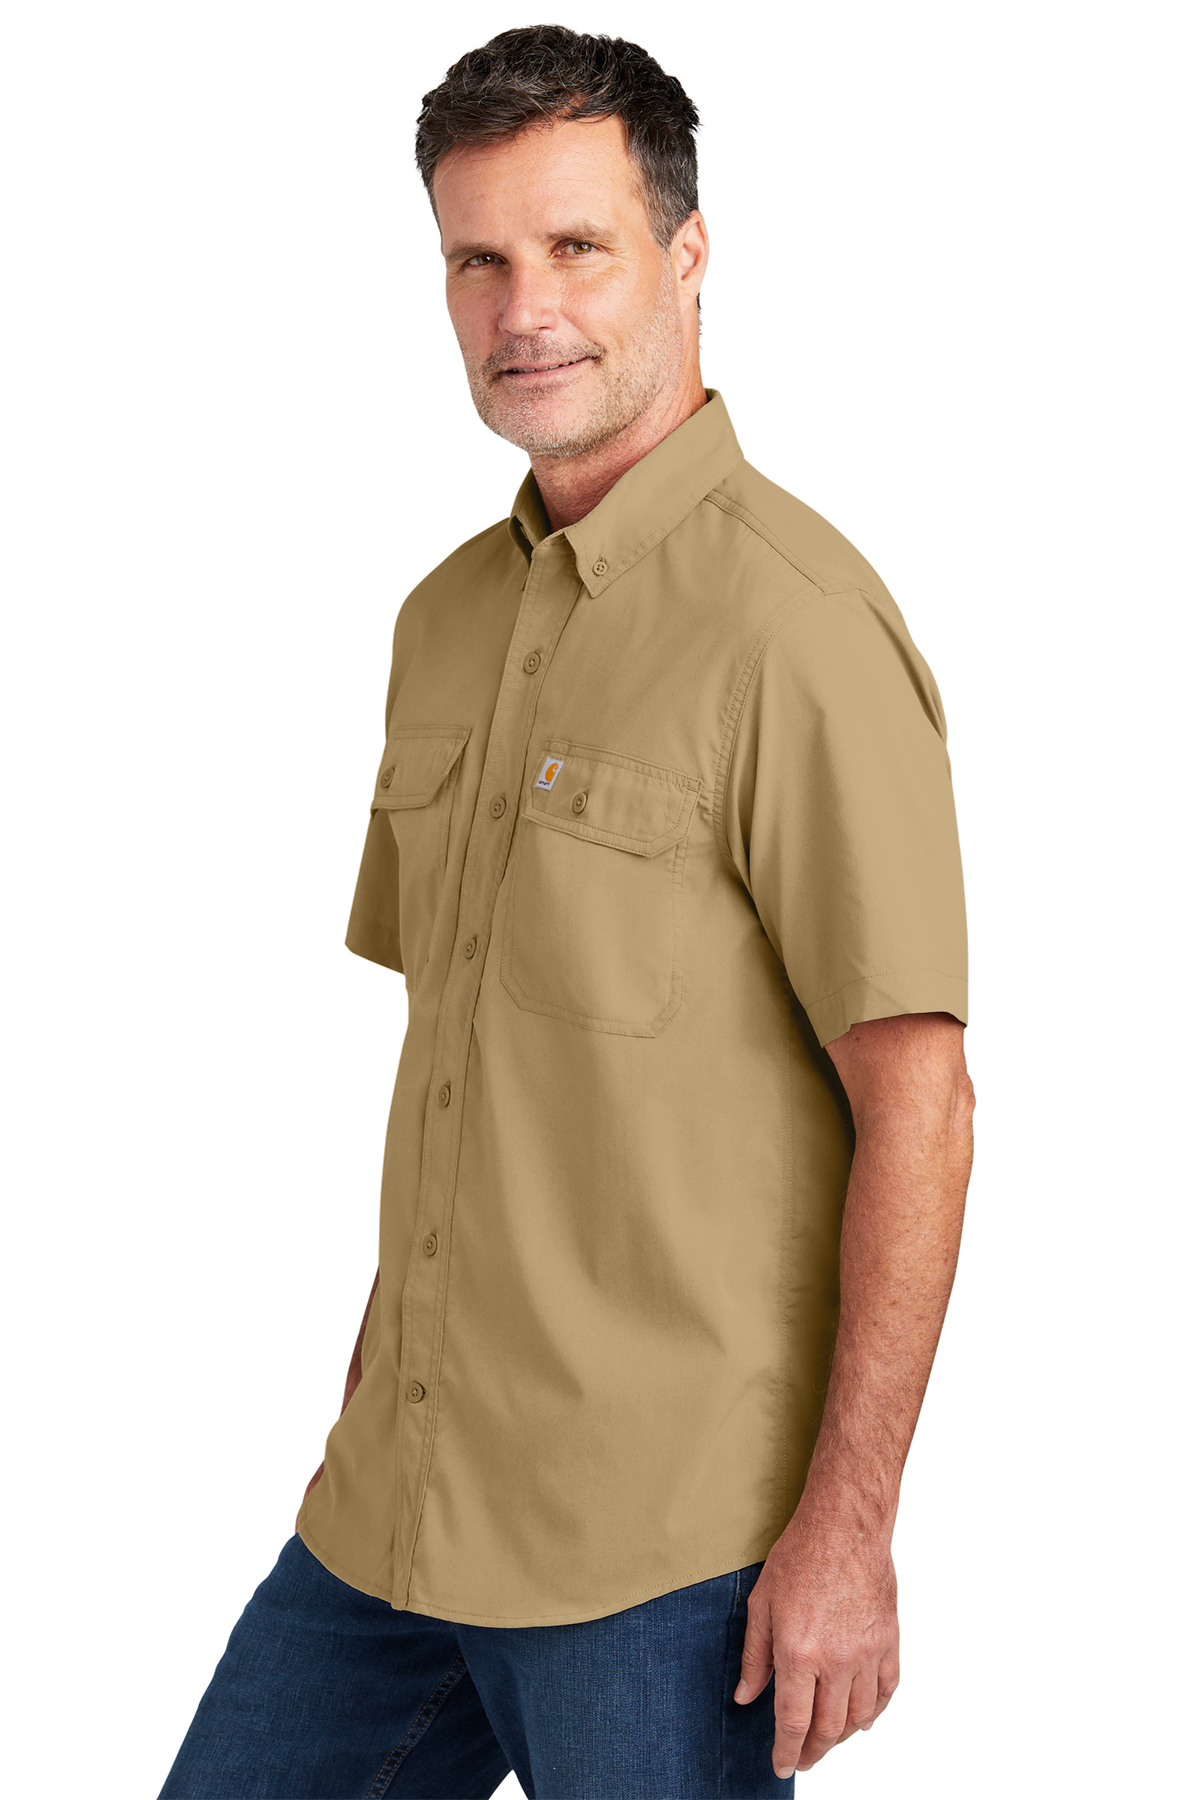 Carhartt Rugged Series Short Sleeve Custom Shirts, Dark Khaki